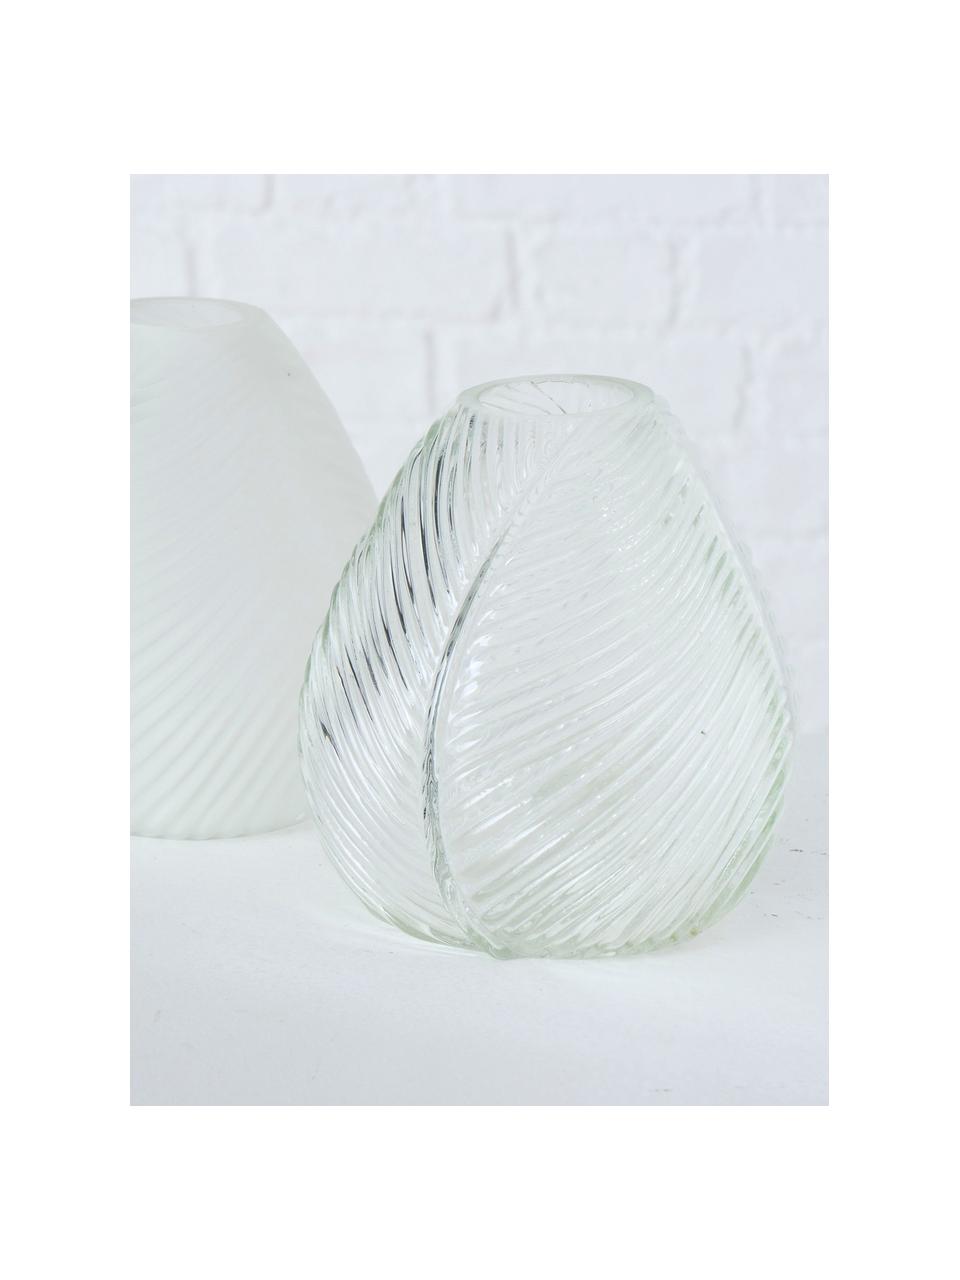 Komplet wazonów ze szkła Lewin, 2 elem., Szkło, Biały, transparentny, Ø 14 x W 15 cm